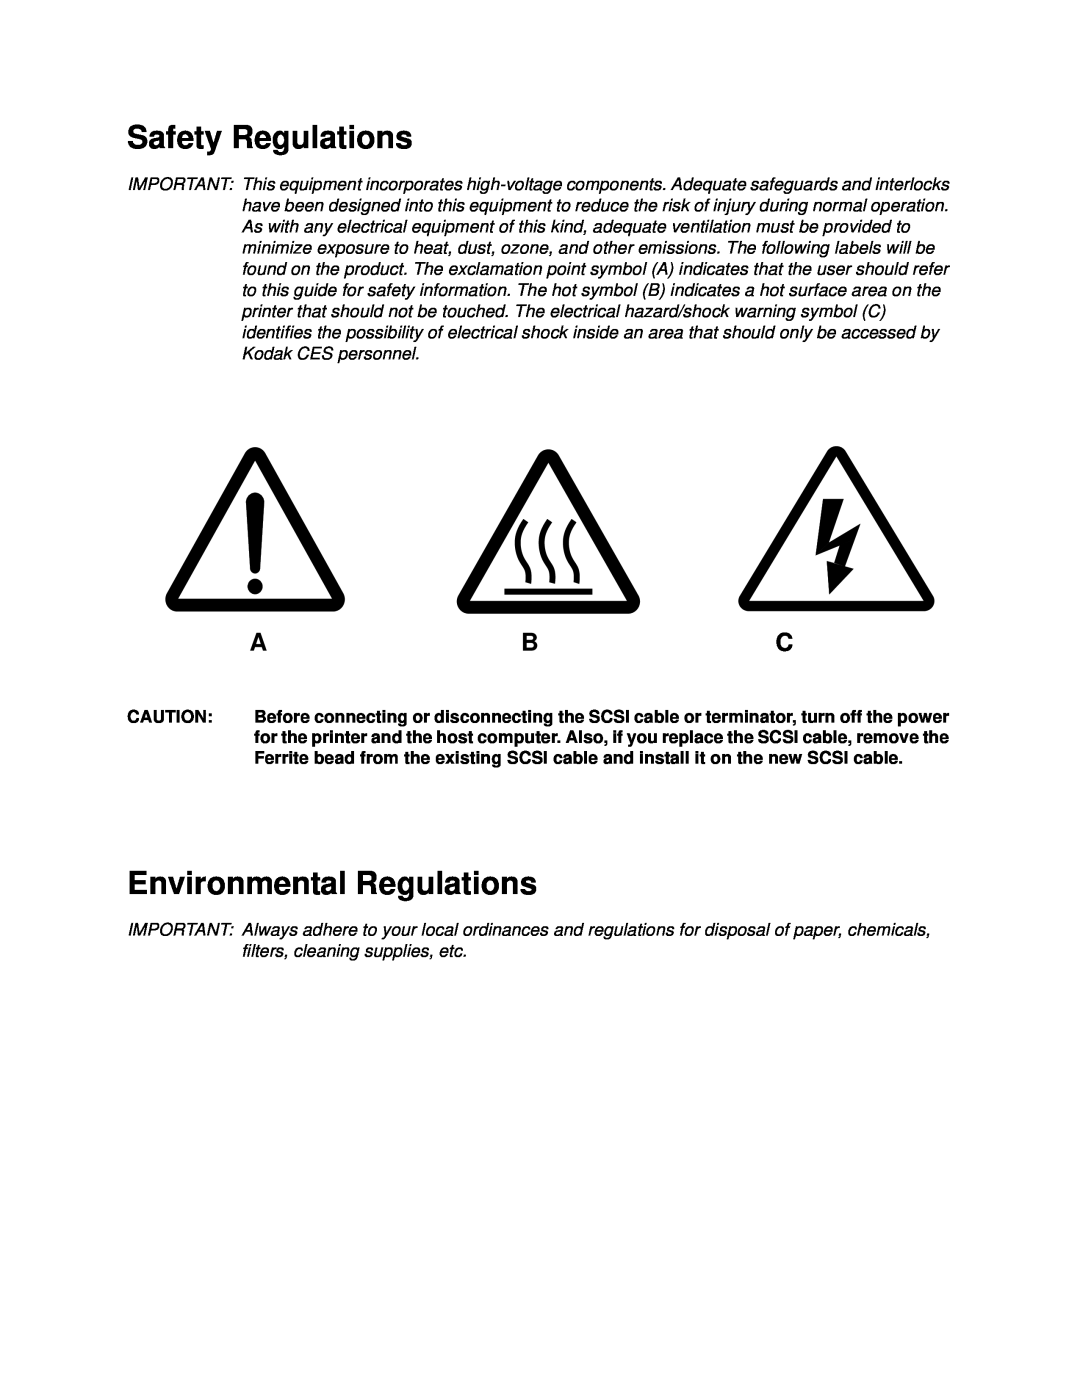 Kodak 20R manual Safety Regulations, Environmental Regulations 